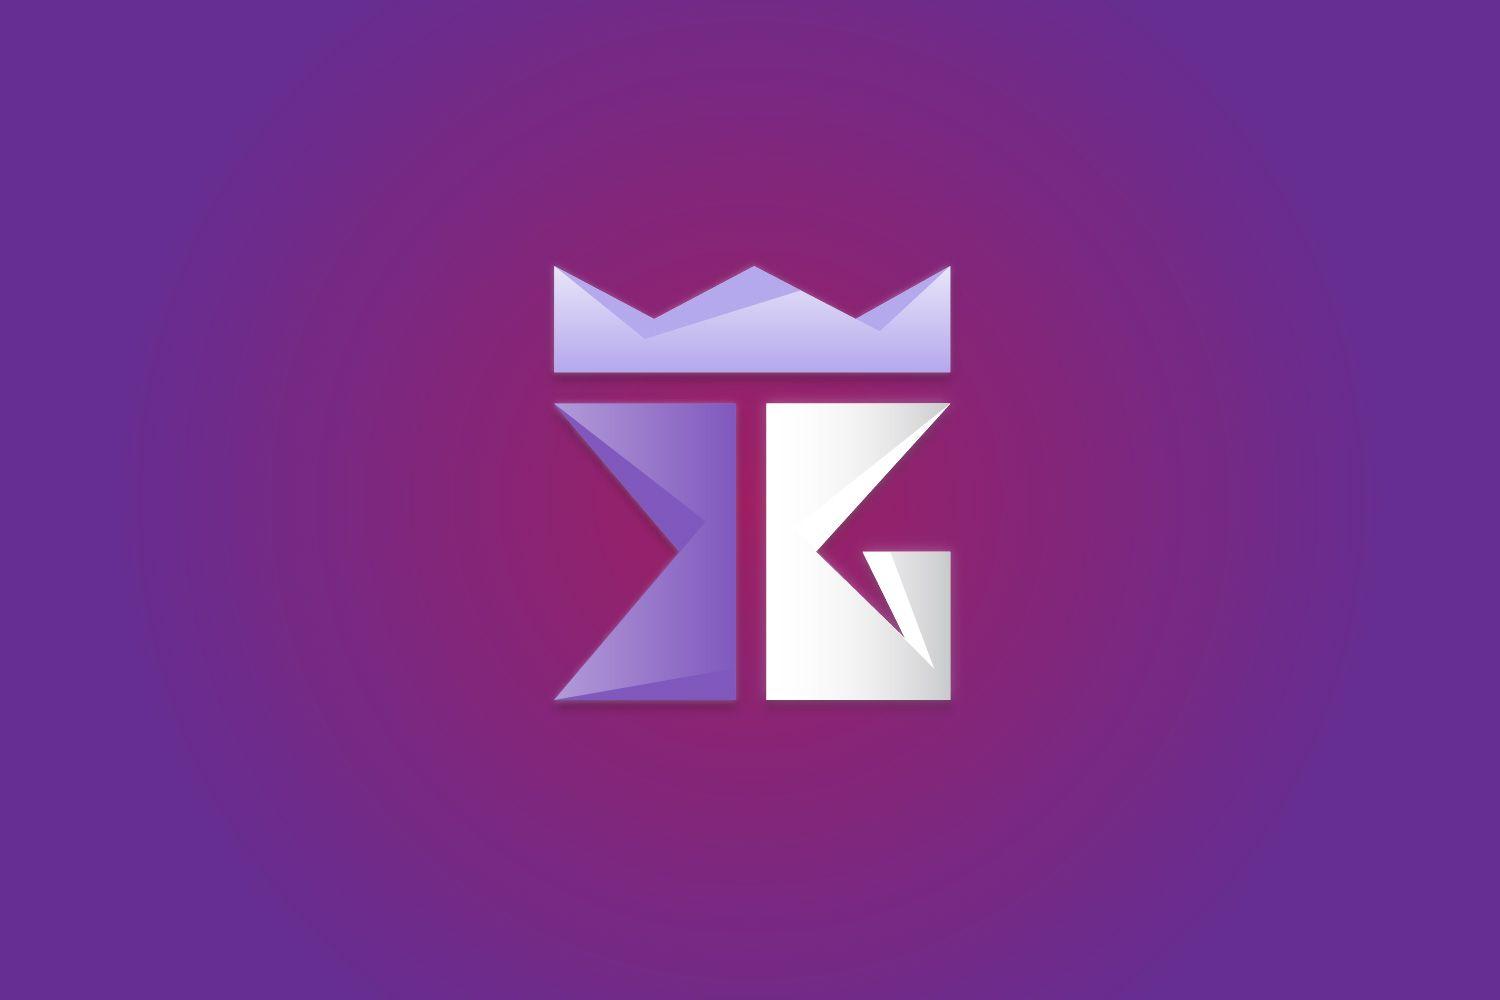 R games ru. Gaming z logo Design. Purple Gaming logo. Gaming logo w. A logo Design for Gaming.